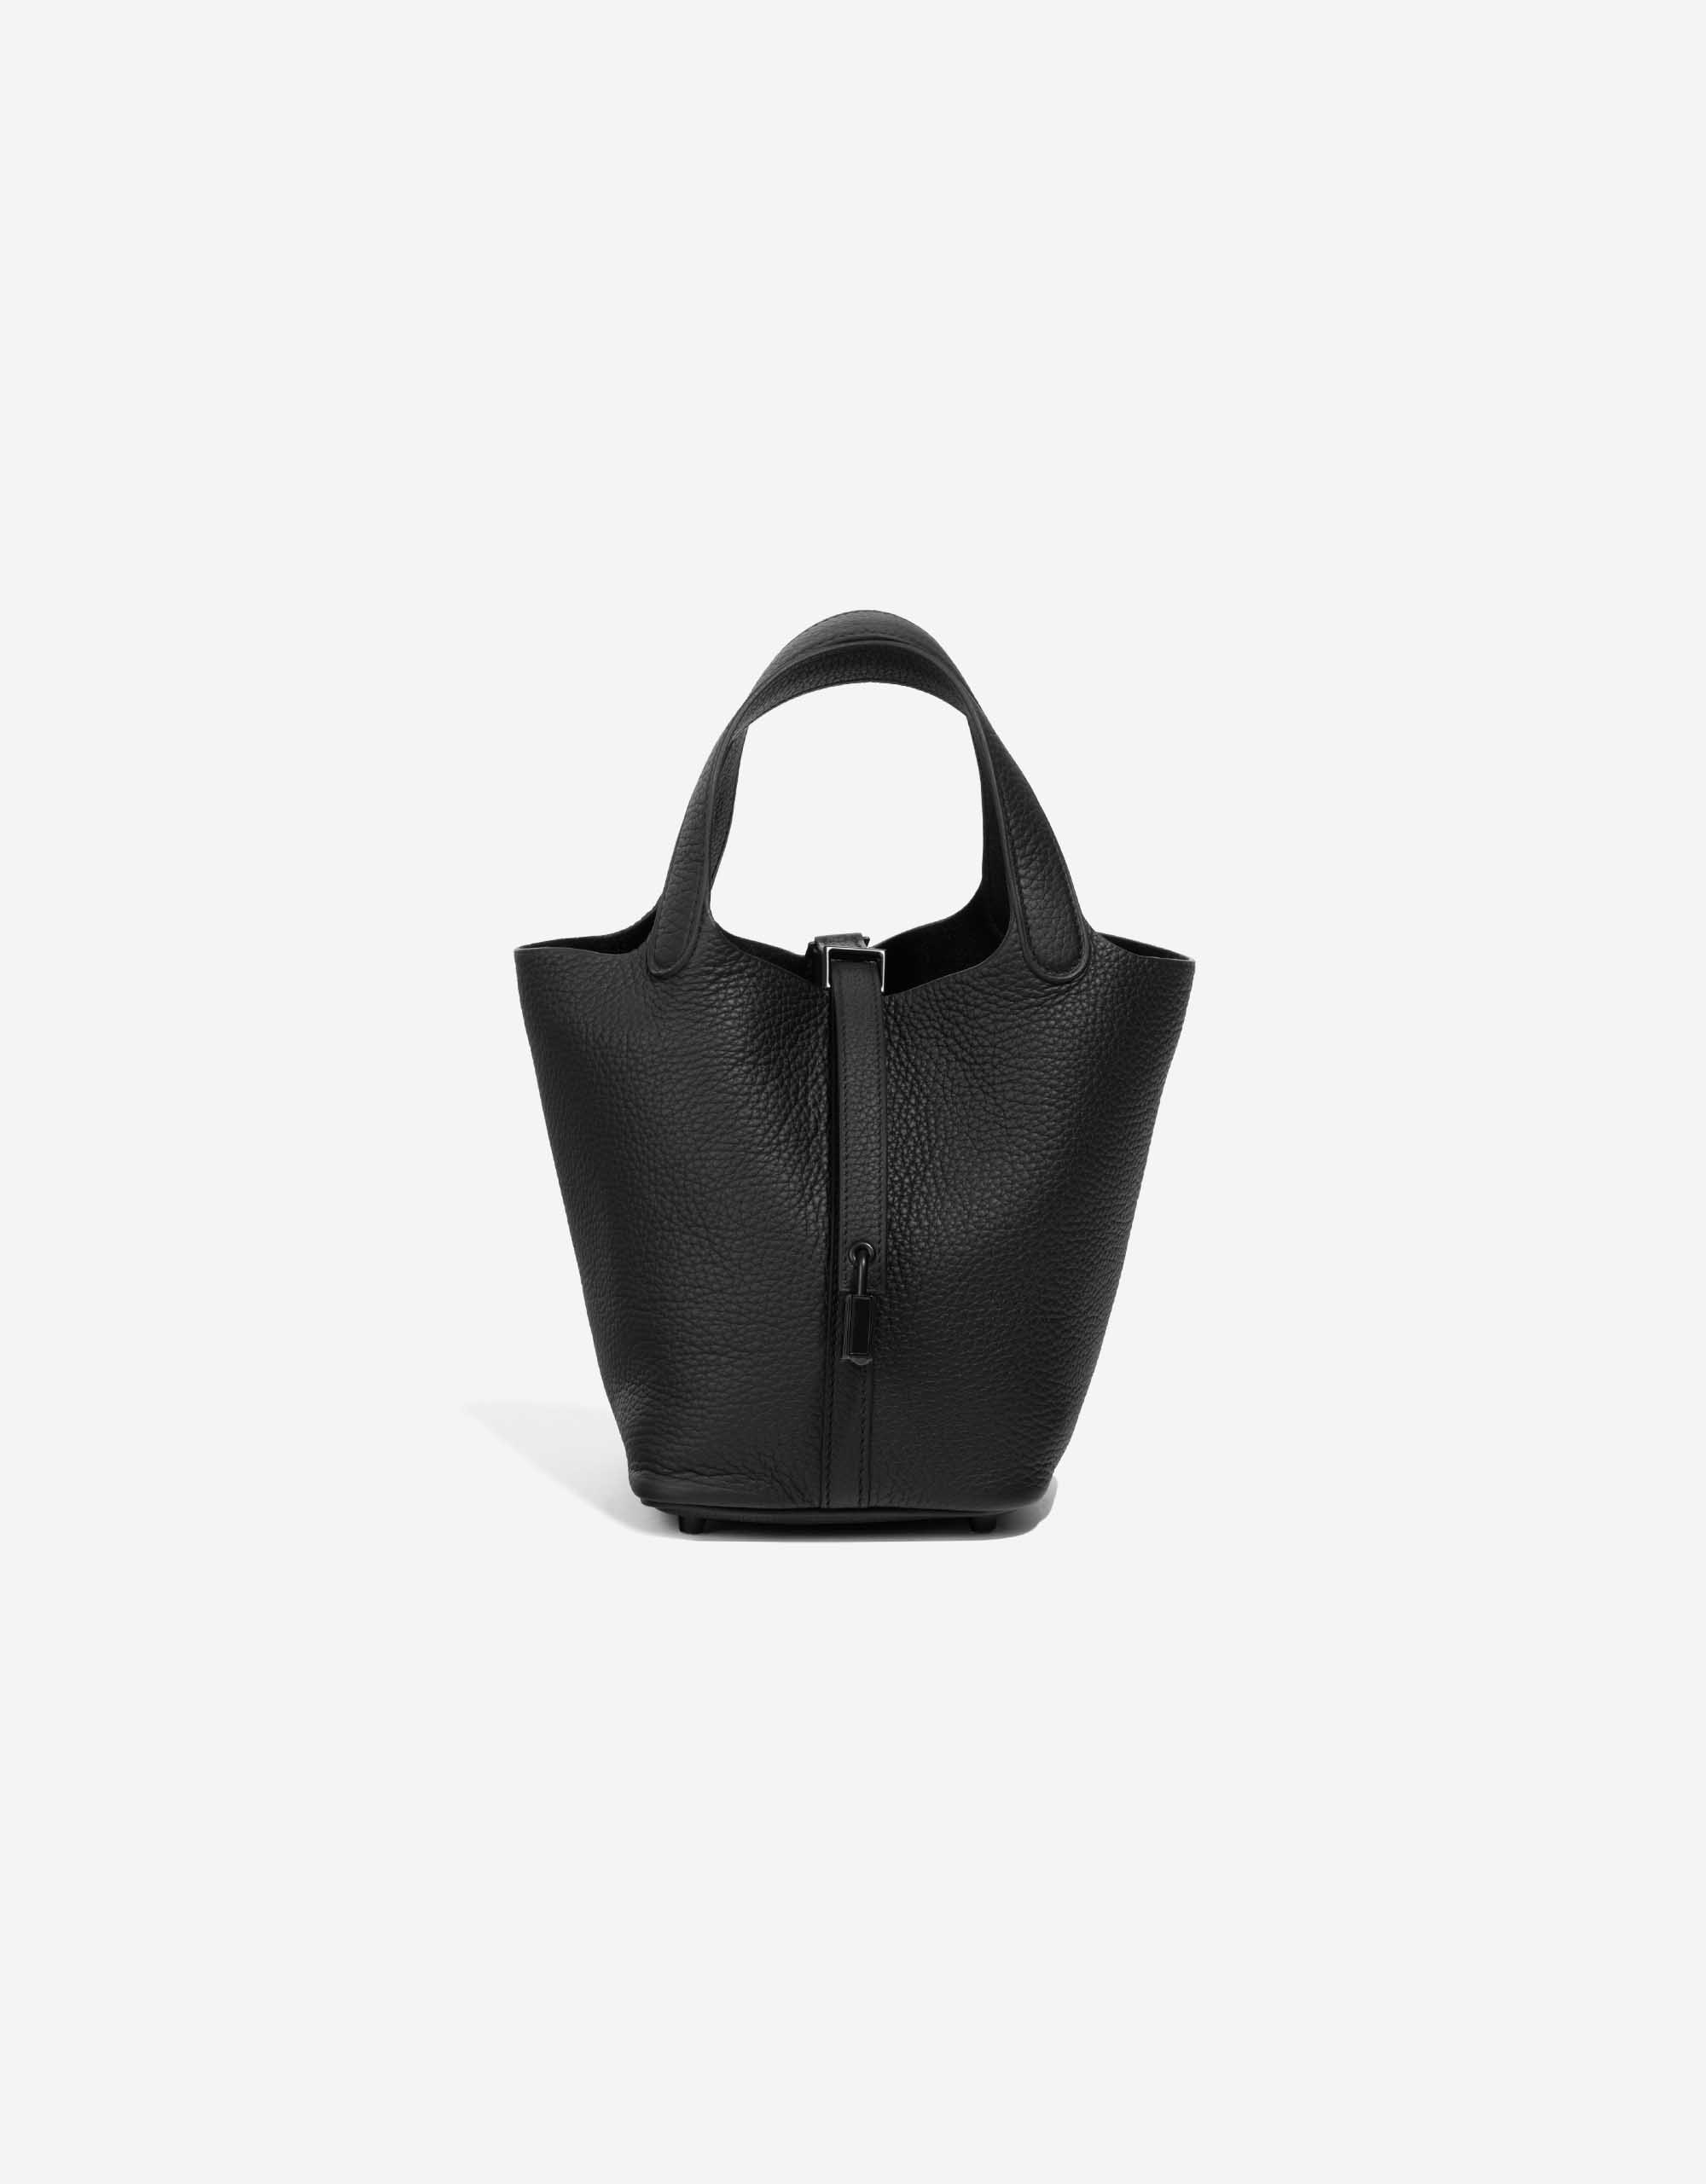 Hermès So Black Picotin 18 Review